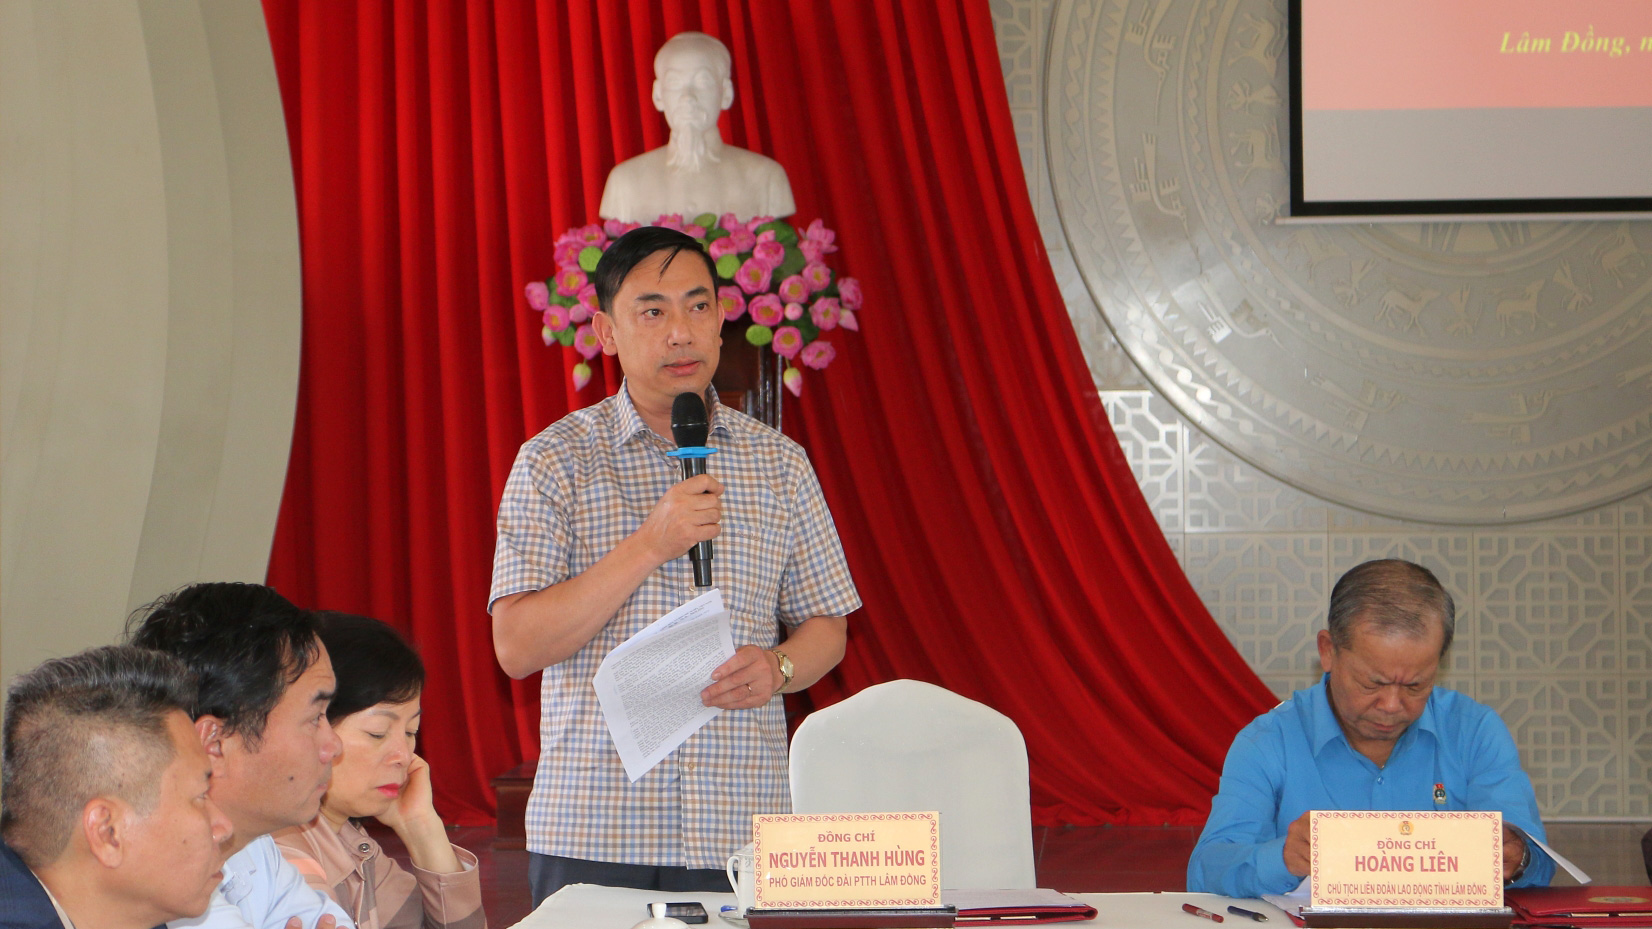 Phó Giám đốc Đài PTTH Lâm Đồng Nguyễn Thanh Hùng trao đổi về kết quả công tác truyền thông công đoàn trên Đài PTTH tỉnh